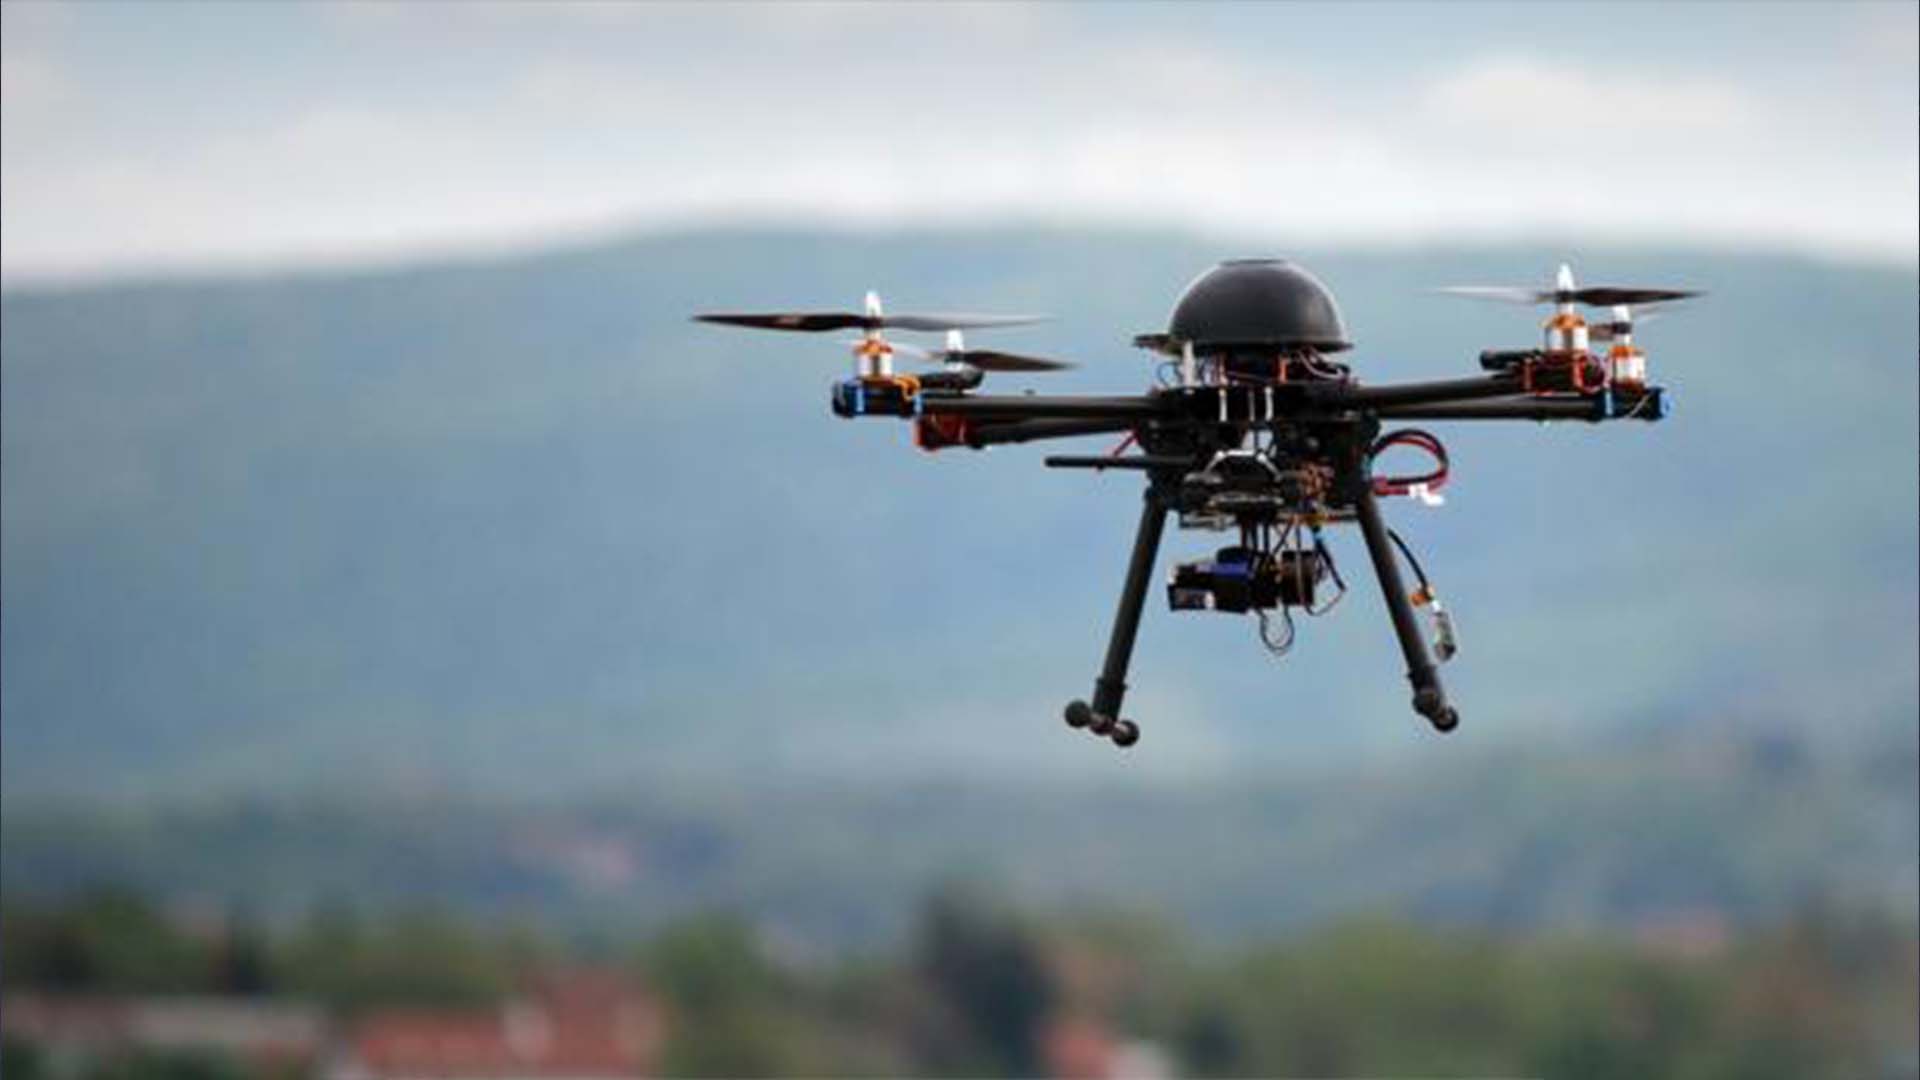 La découverte d'un drone dans le secteur du centre de détention de Québec a permis d'intercepter une transaction de drogue, en fin de semaine.